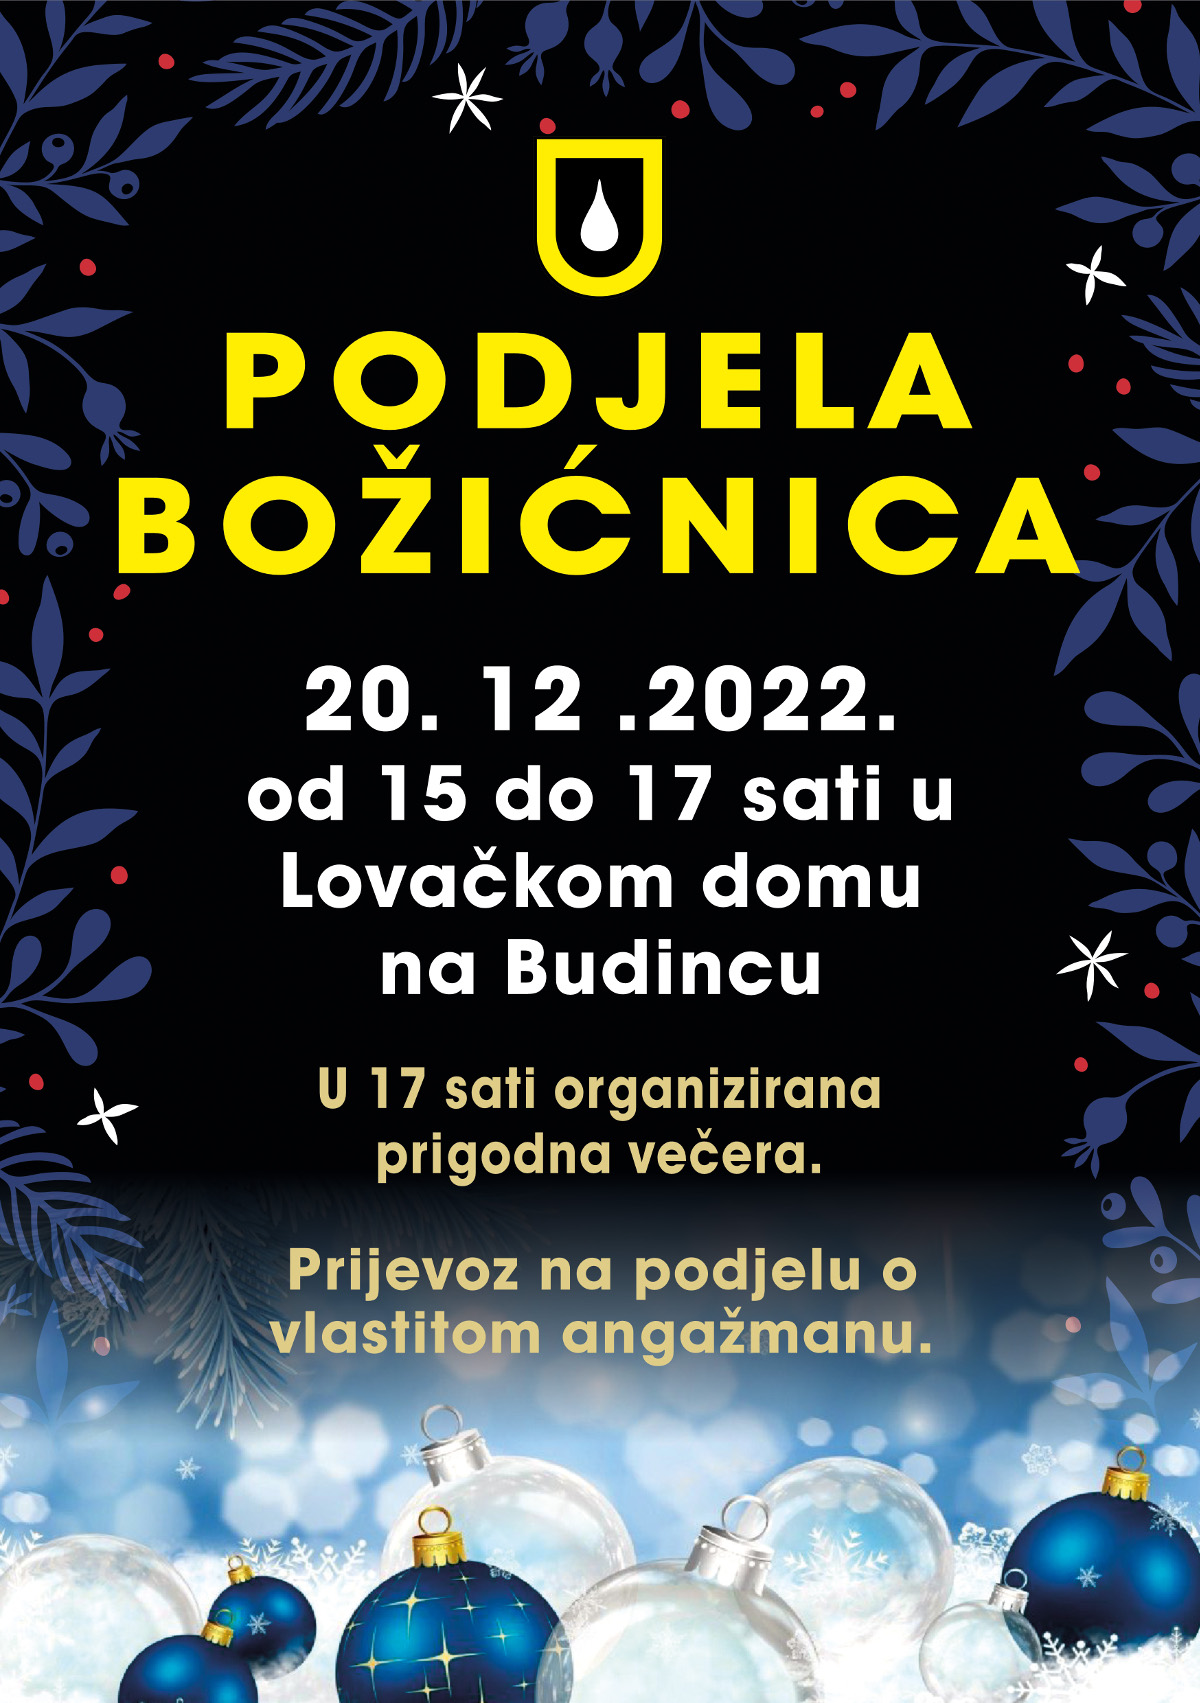 ljubescica_podjela_bozicnica_najava-2022.jpg